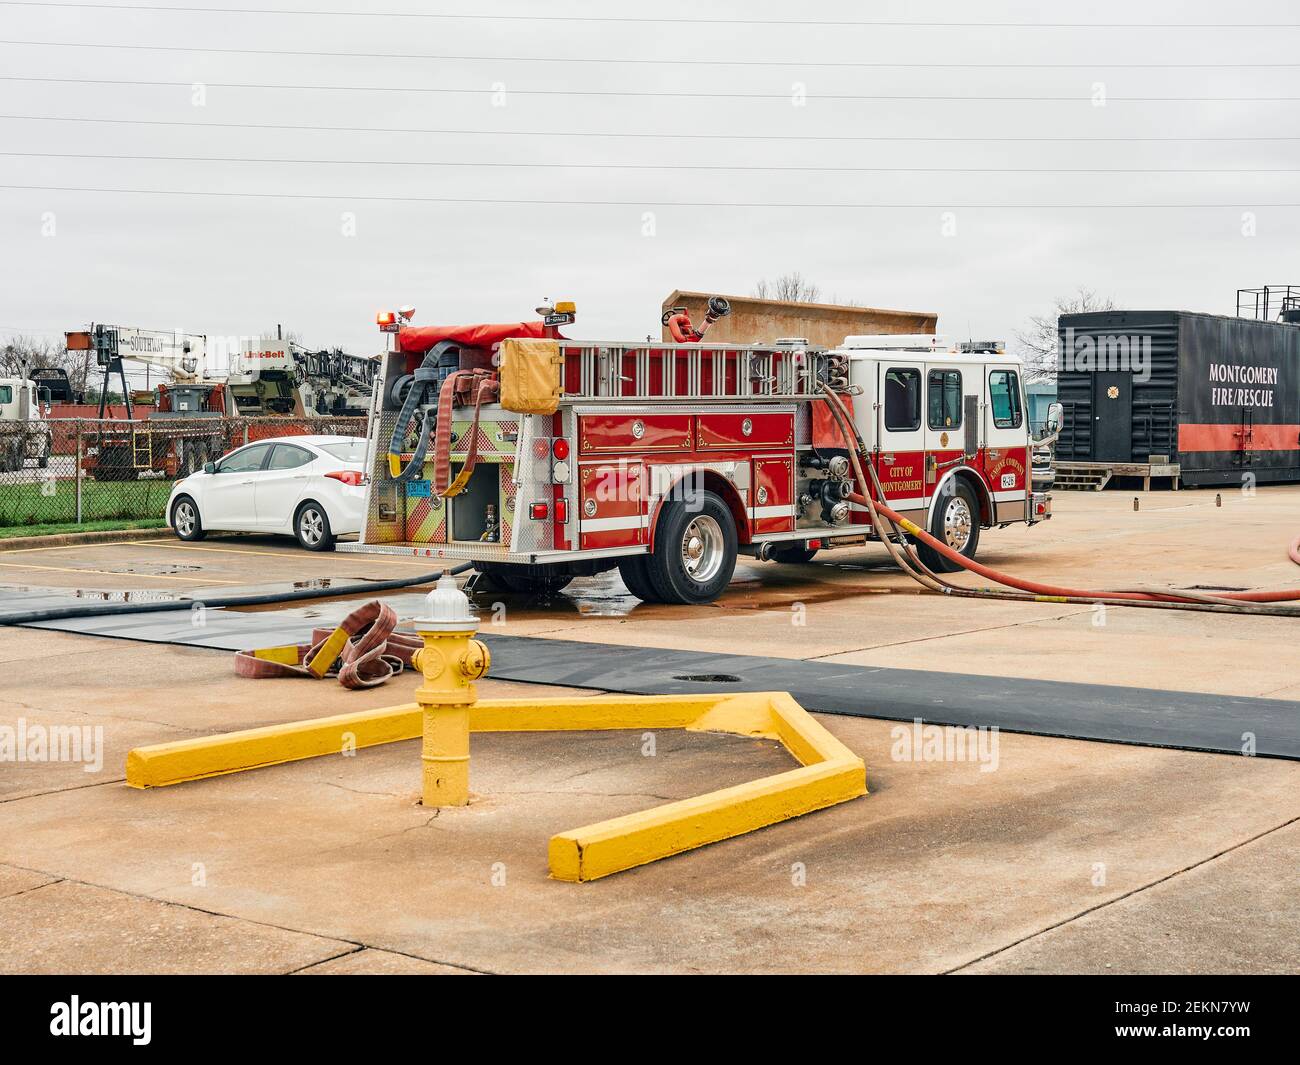 Montgomery Fire Rescue camion d'incendie ou pompe à incendie fournissant de l'eau aux pompiers à Montgomery Alabama, États-Unis. Banque D'Images